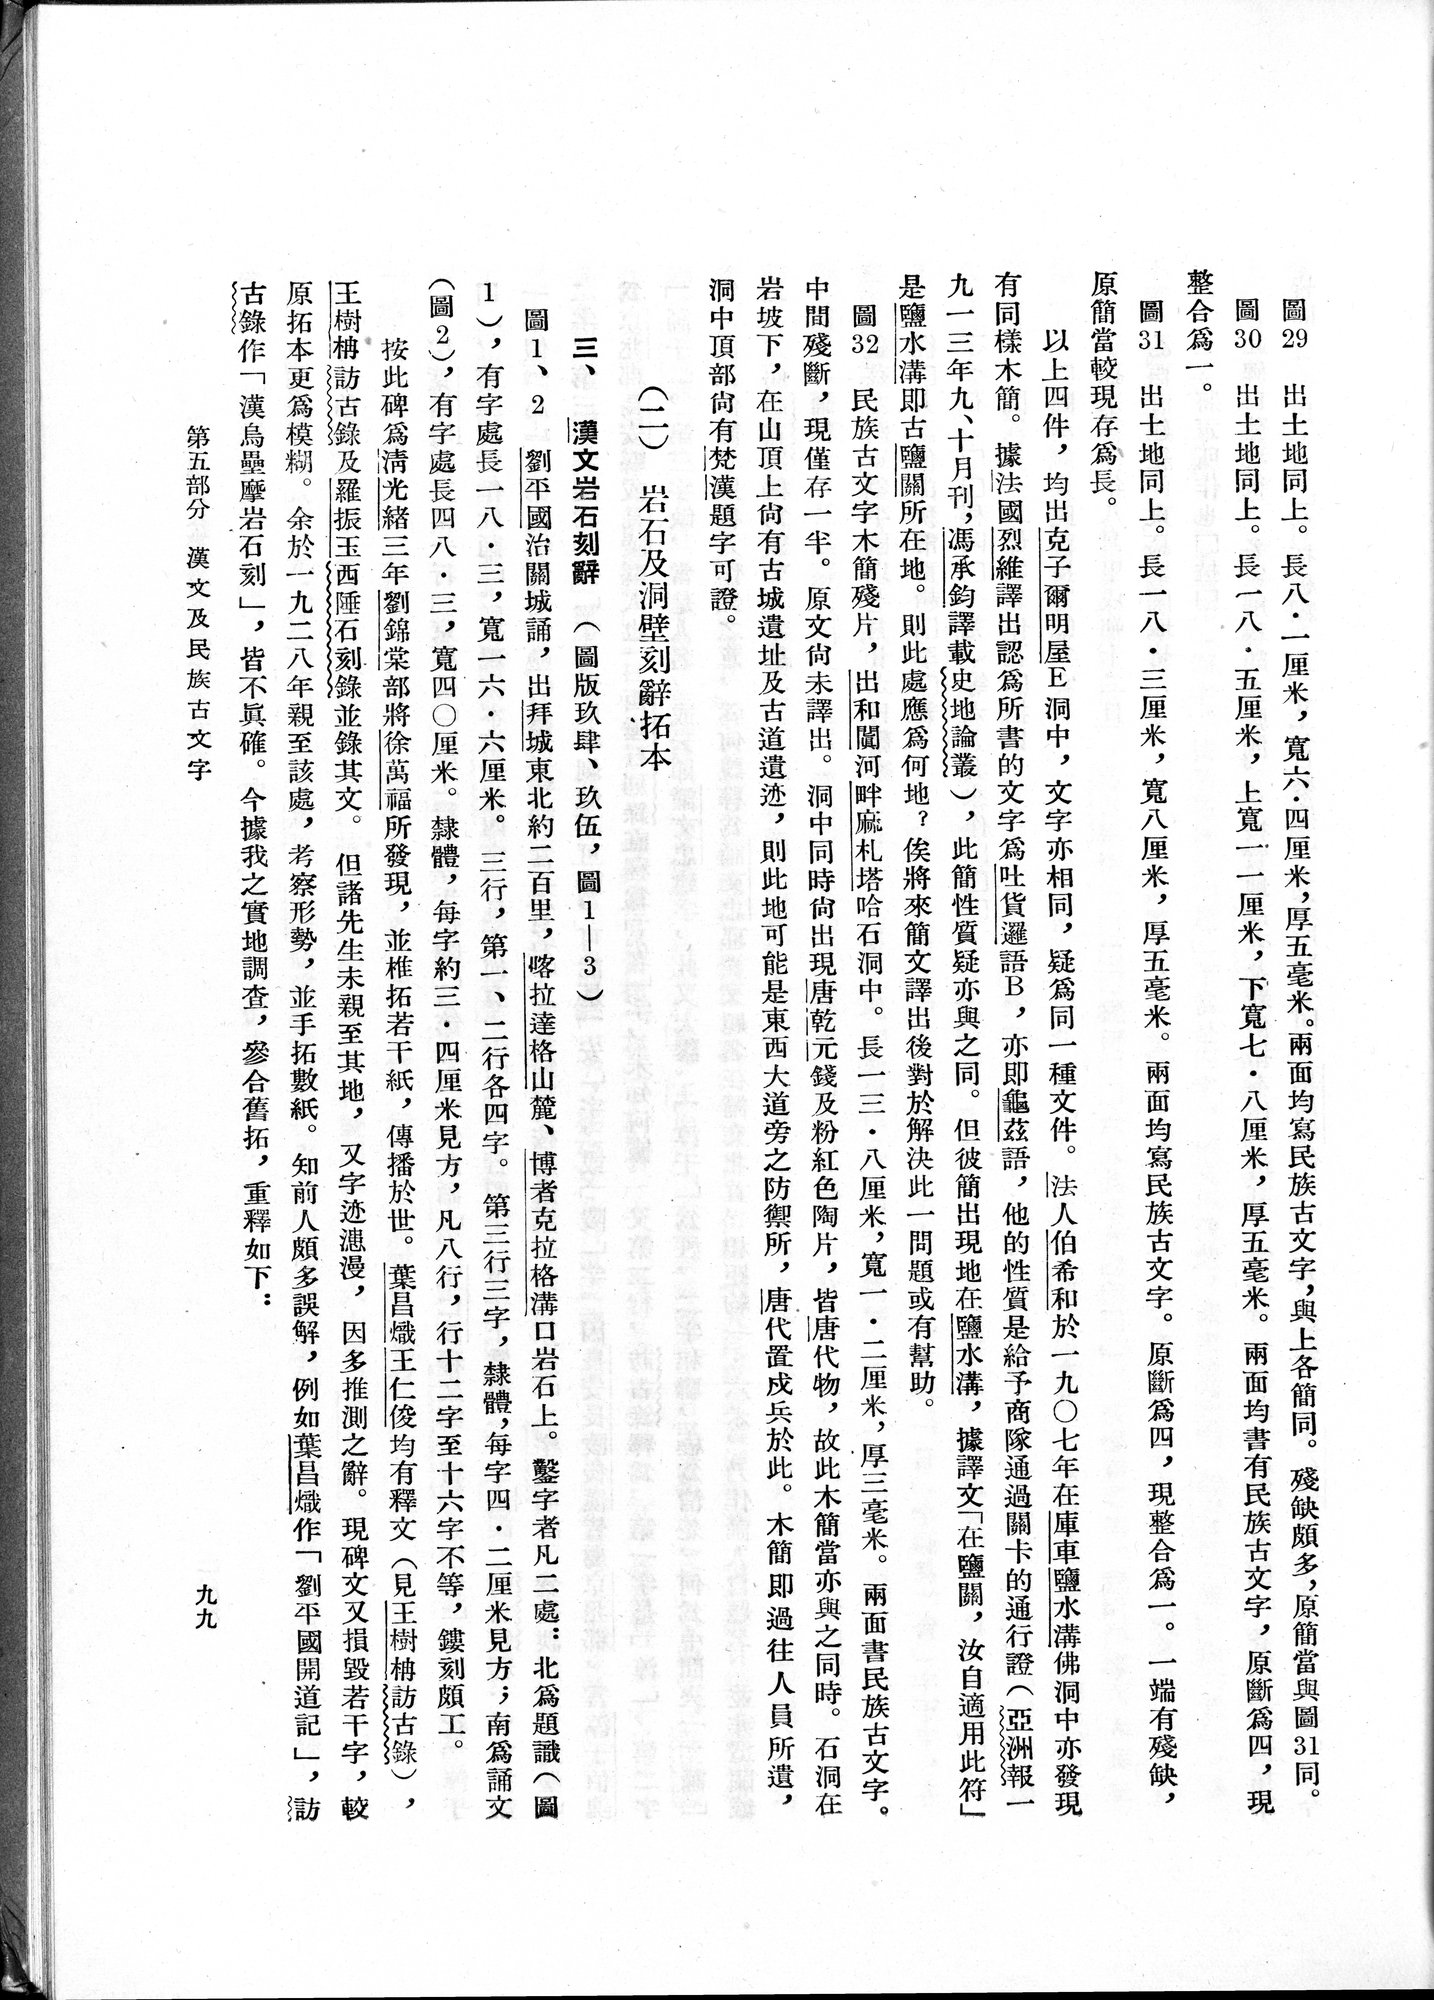 塔里木盆地考古記 : vol.1 / Page 163 (Grayscale High Resolution Image)